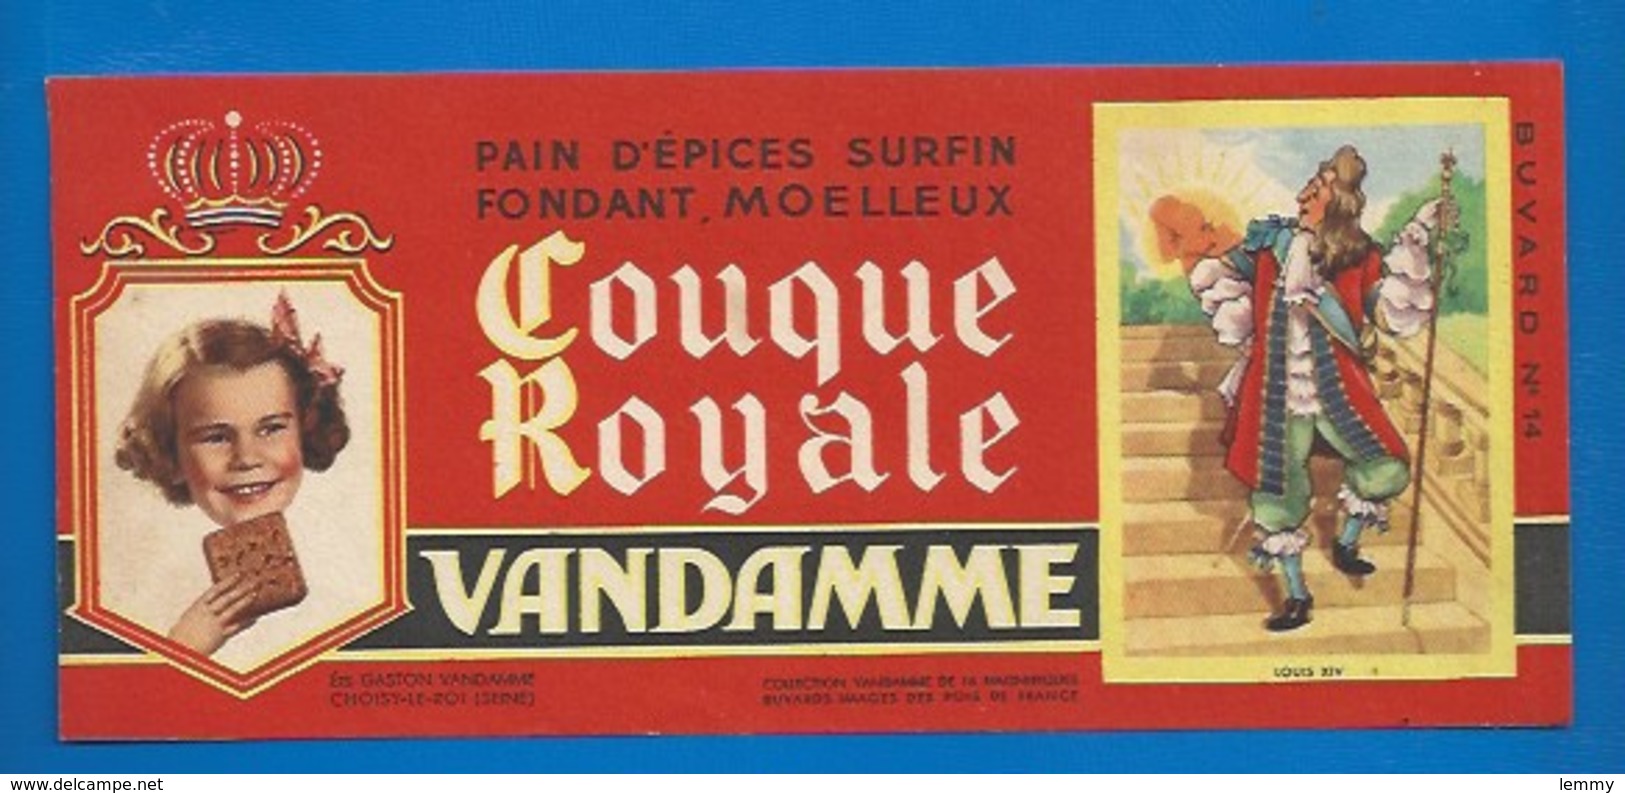 94 - CHOISY-LE-ROI - BUVARD ILLUSTRÉ - PAIN D'ÉPICES VANDAMME - COUQUE ROYALE - HISTOIRE DE FRANCE - LOUIS XIV -N°14 - Pain D'épices